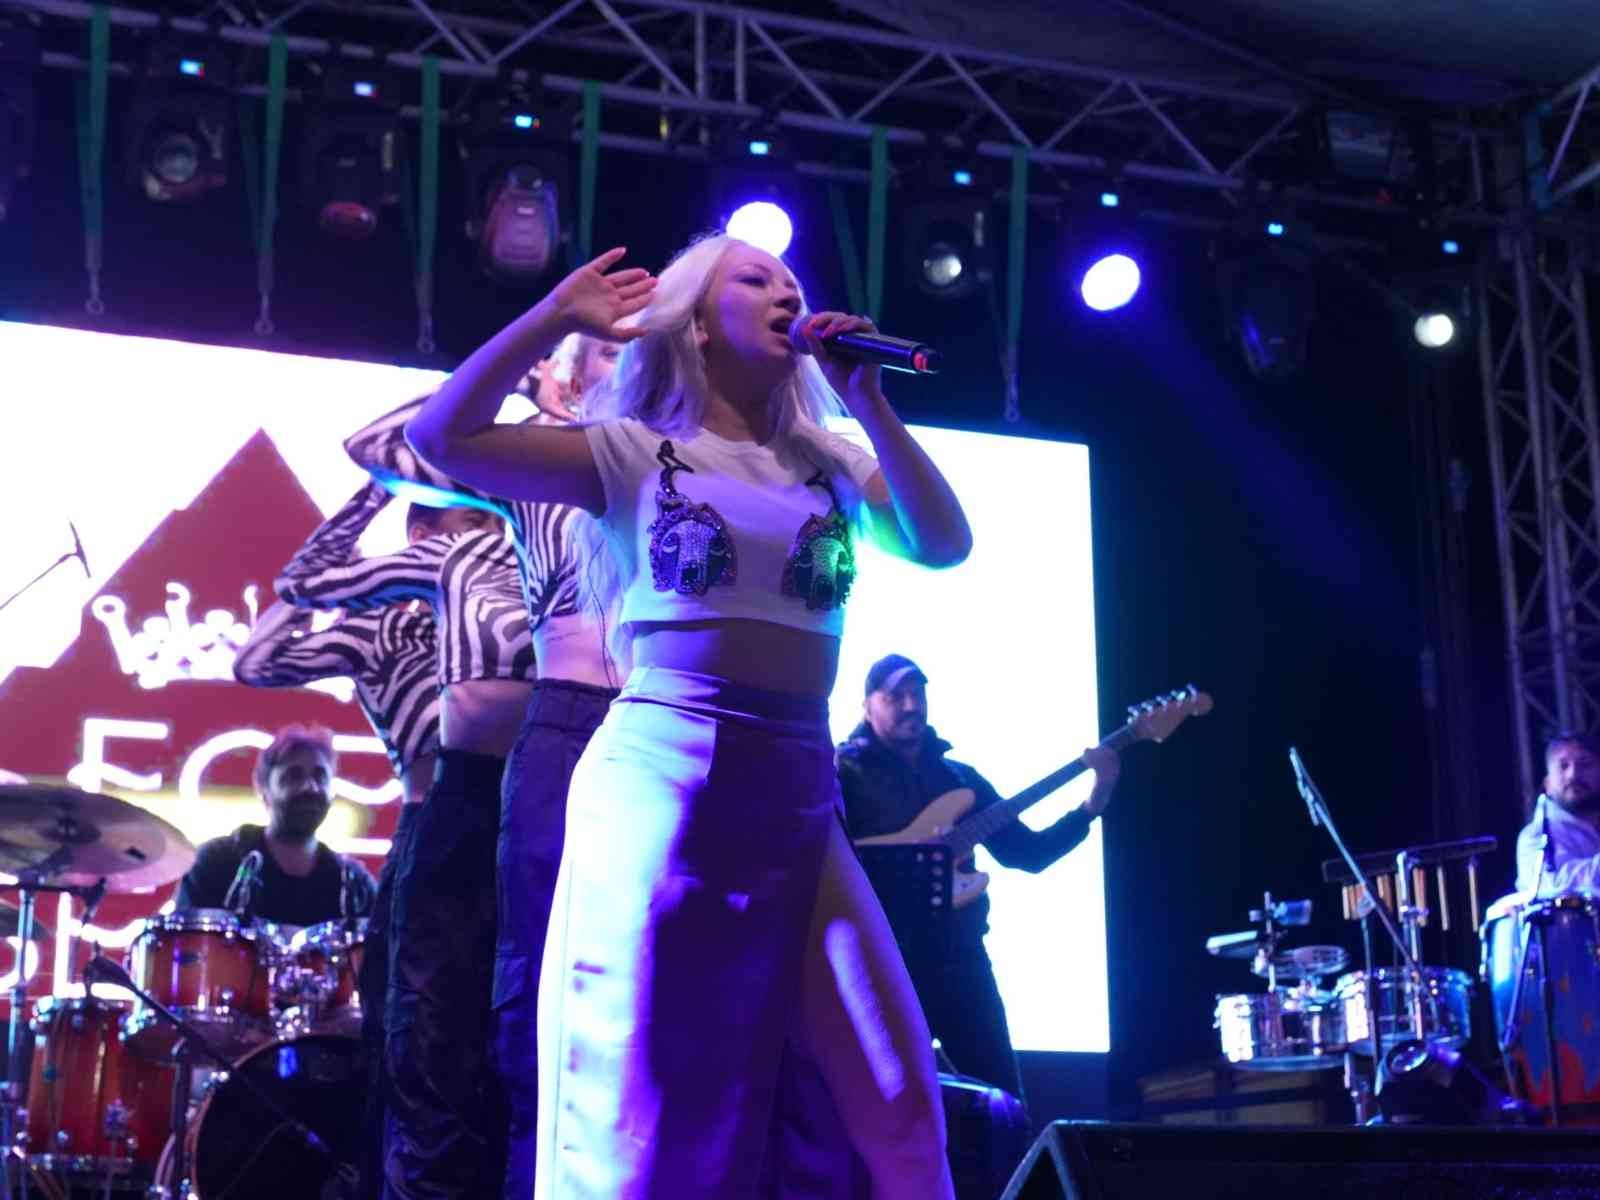 Yalova Üniversitesi’nin Yalova Belediyesi ile birlikte düzenlediği YUNİFESST’22’de sahne alan ünlü şarkıcı Ece Seçkin, festivale damgasını vurdu ...